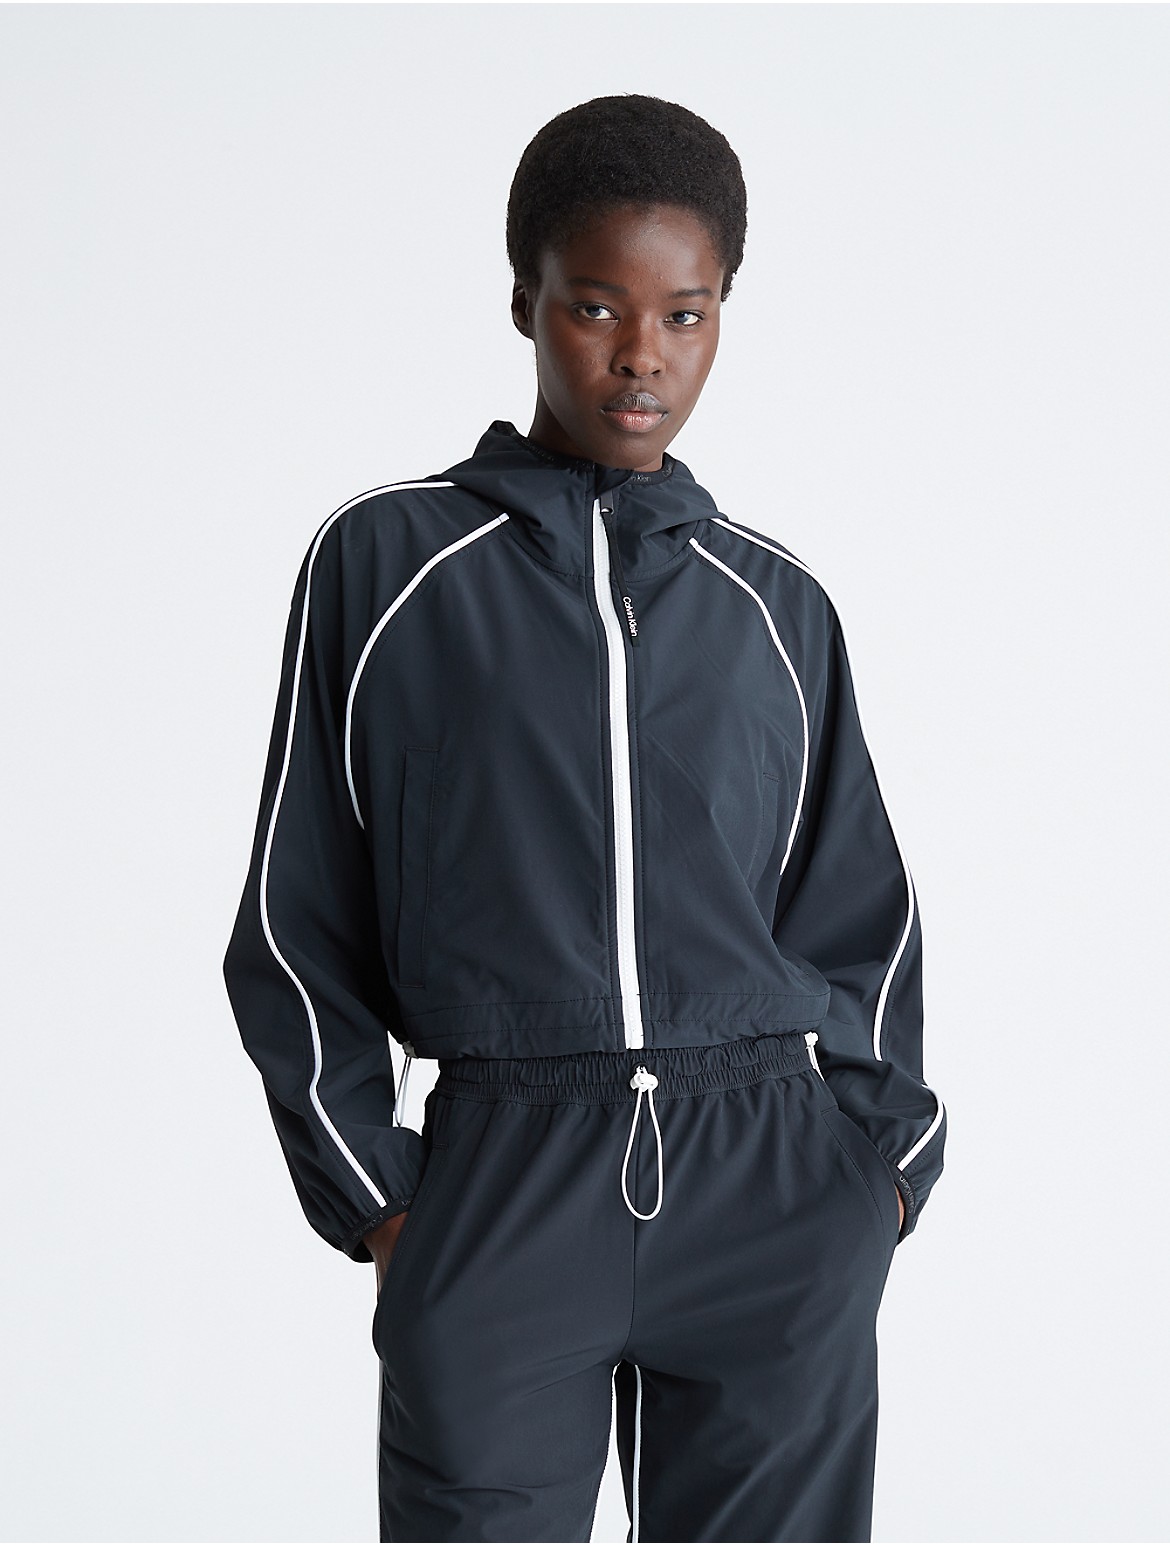 Calvin Klein Women's CK Sport Windbreaker Jacket - Black - L